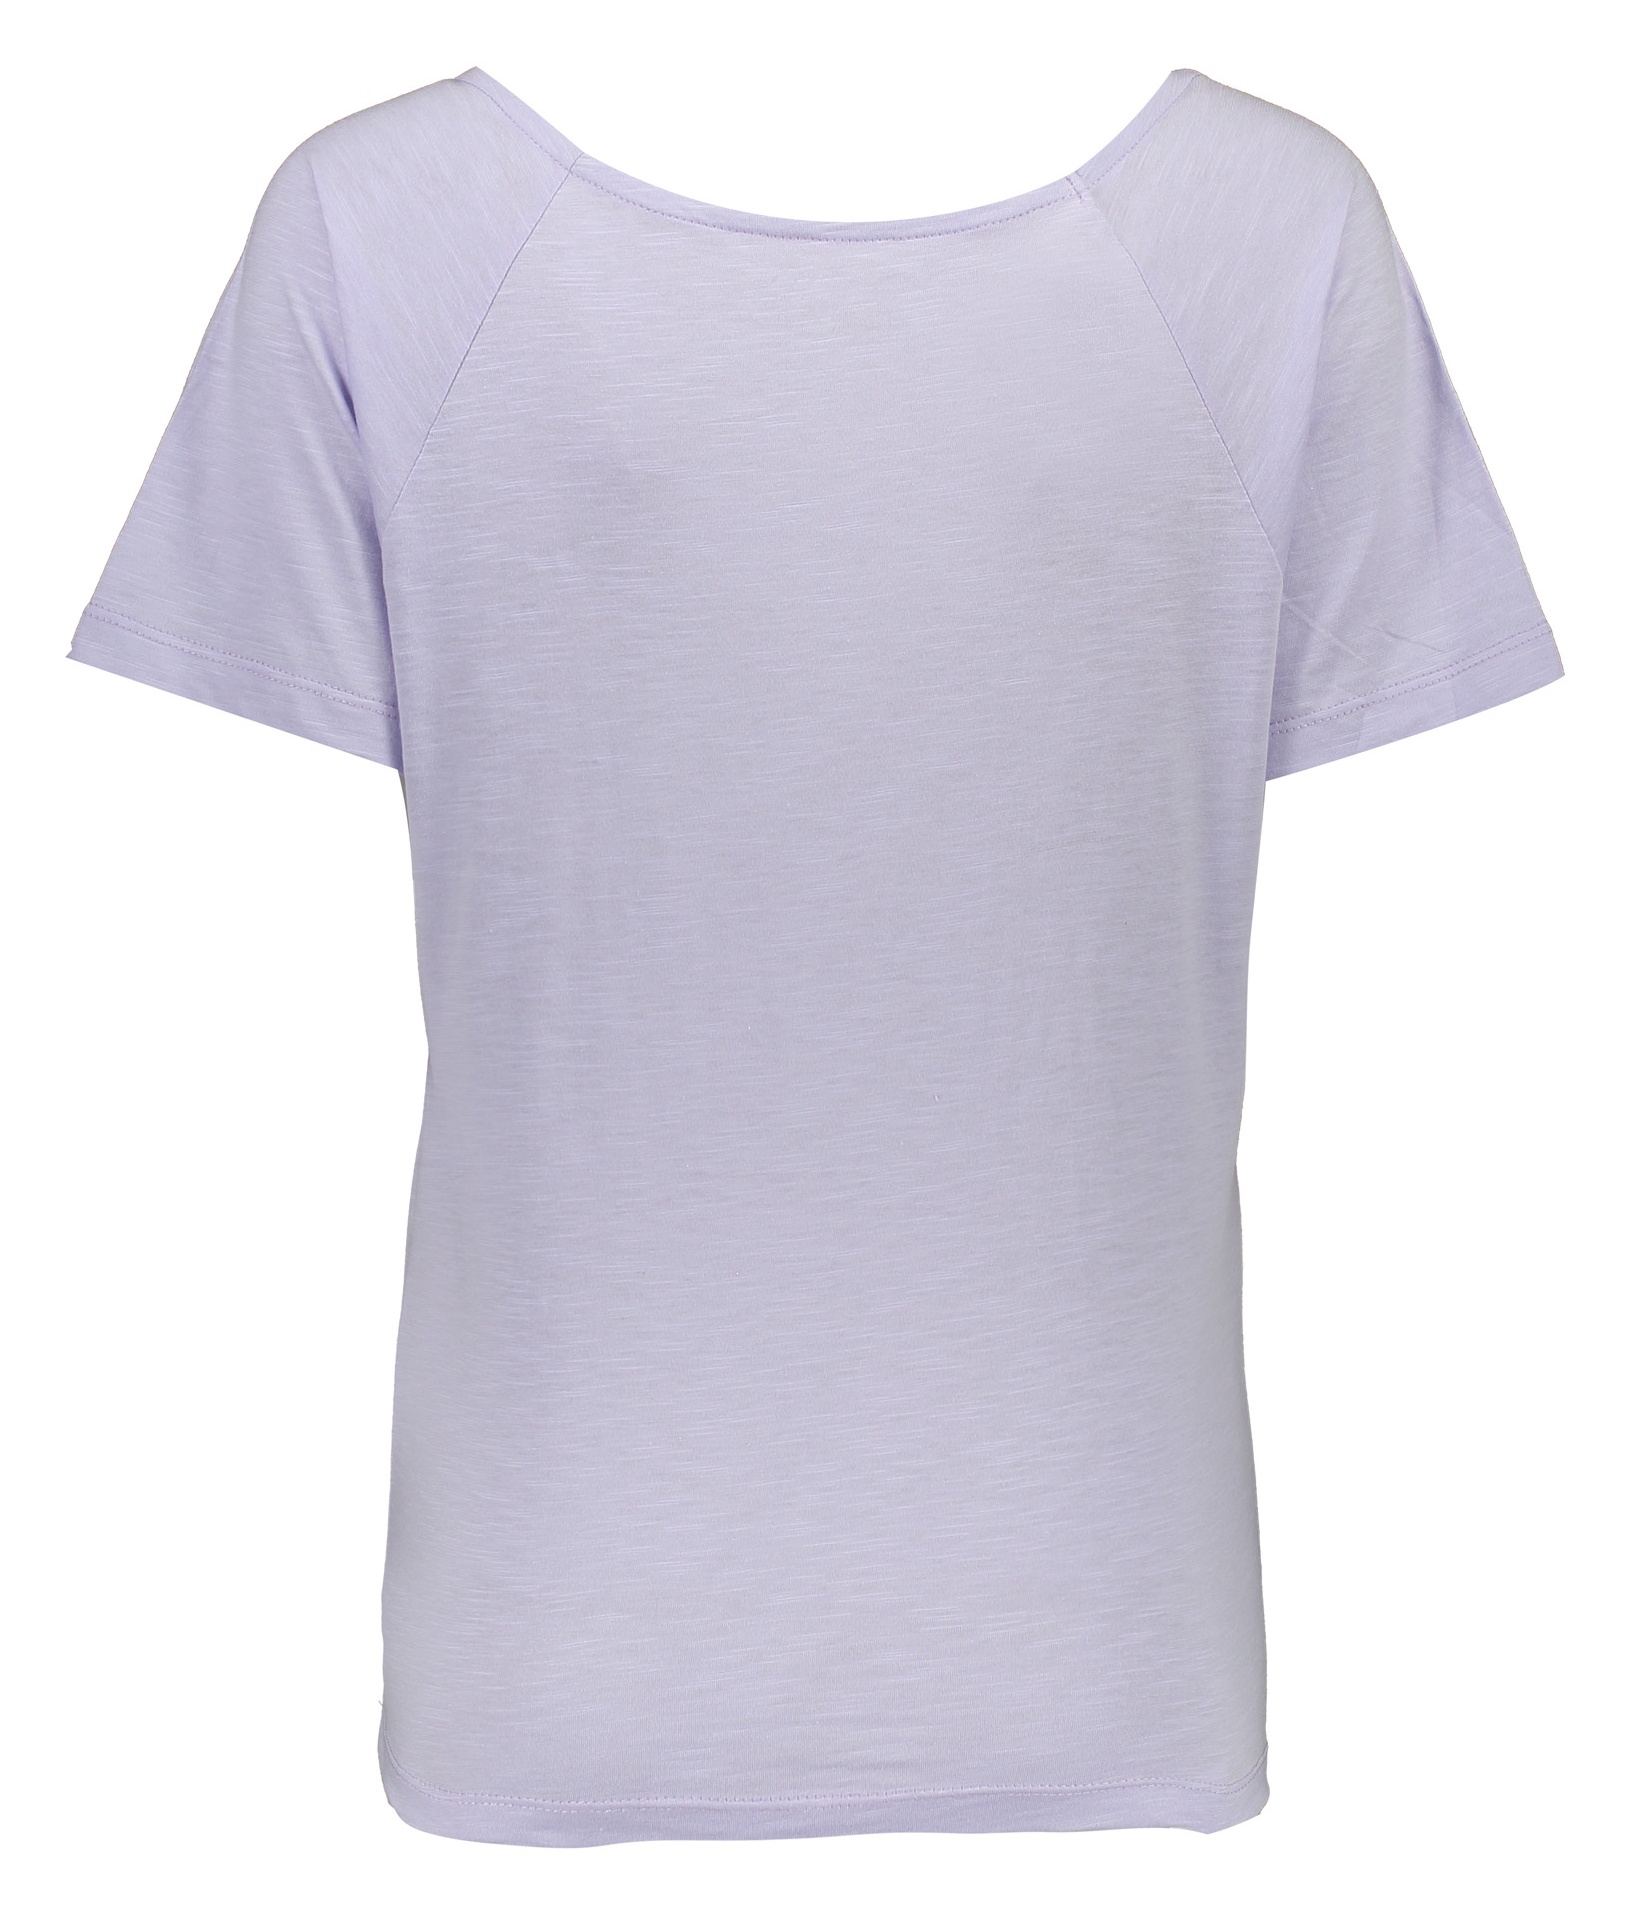 تی شرت زنانه گارودی مدل 1003104023-64